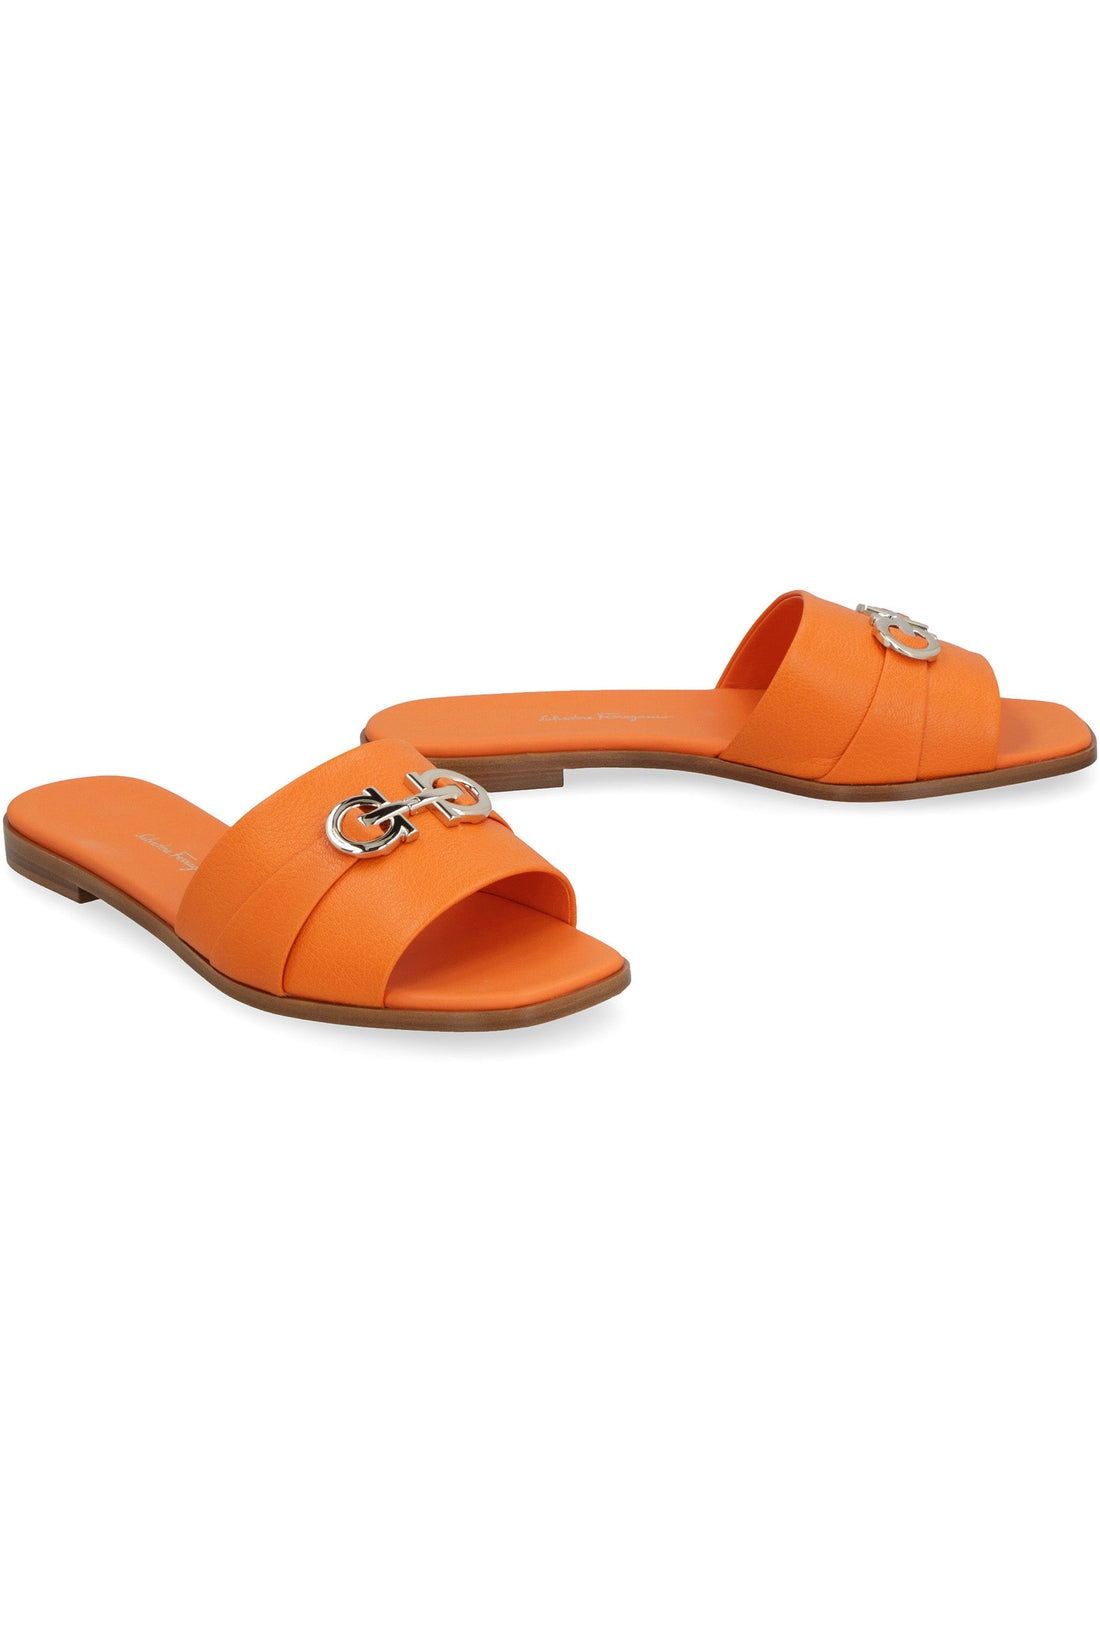 Salvatore Ferragamo-OUTLET-SALE-Leather flat sandals-ARCHIVIST